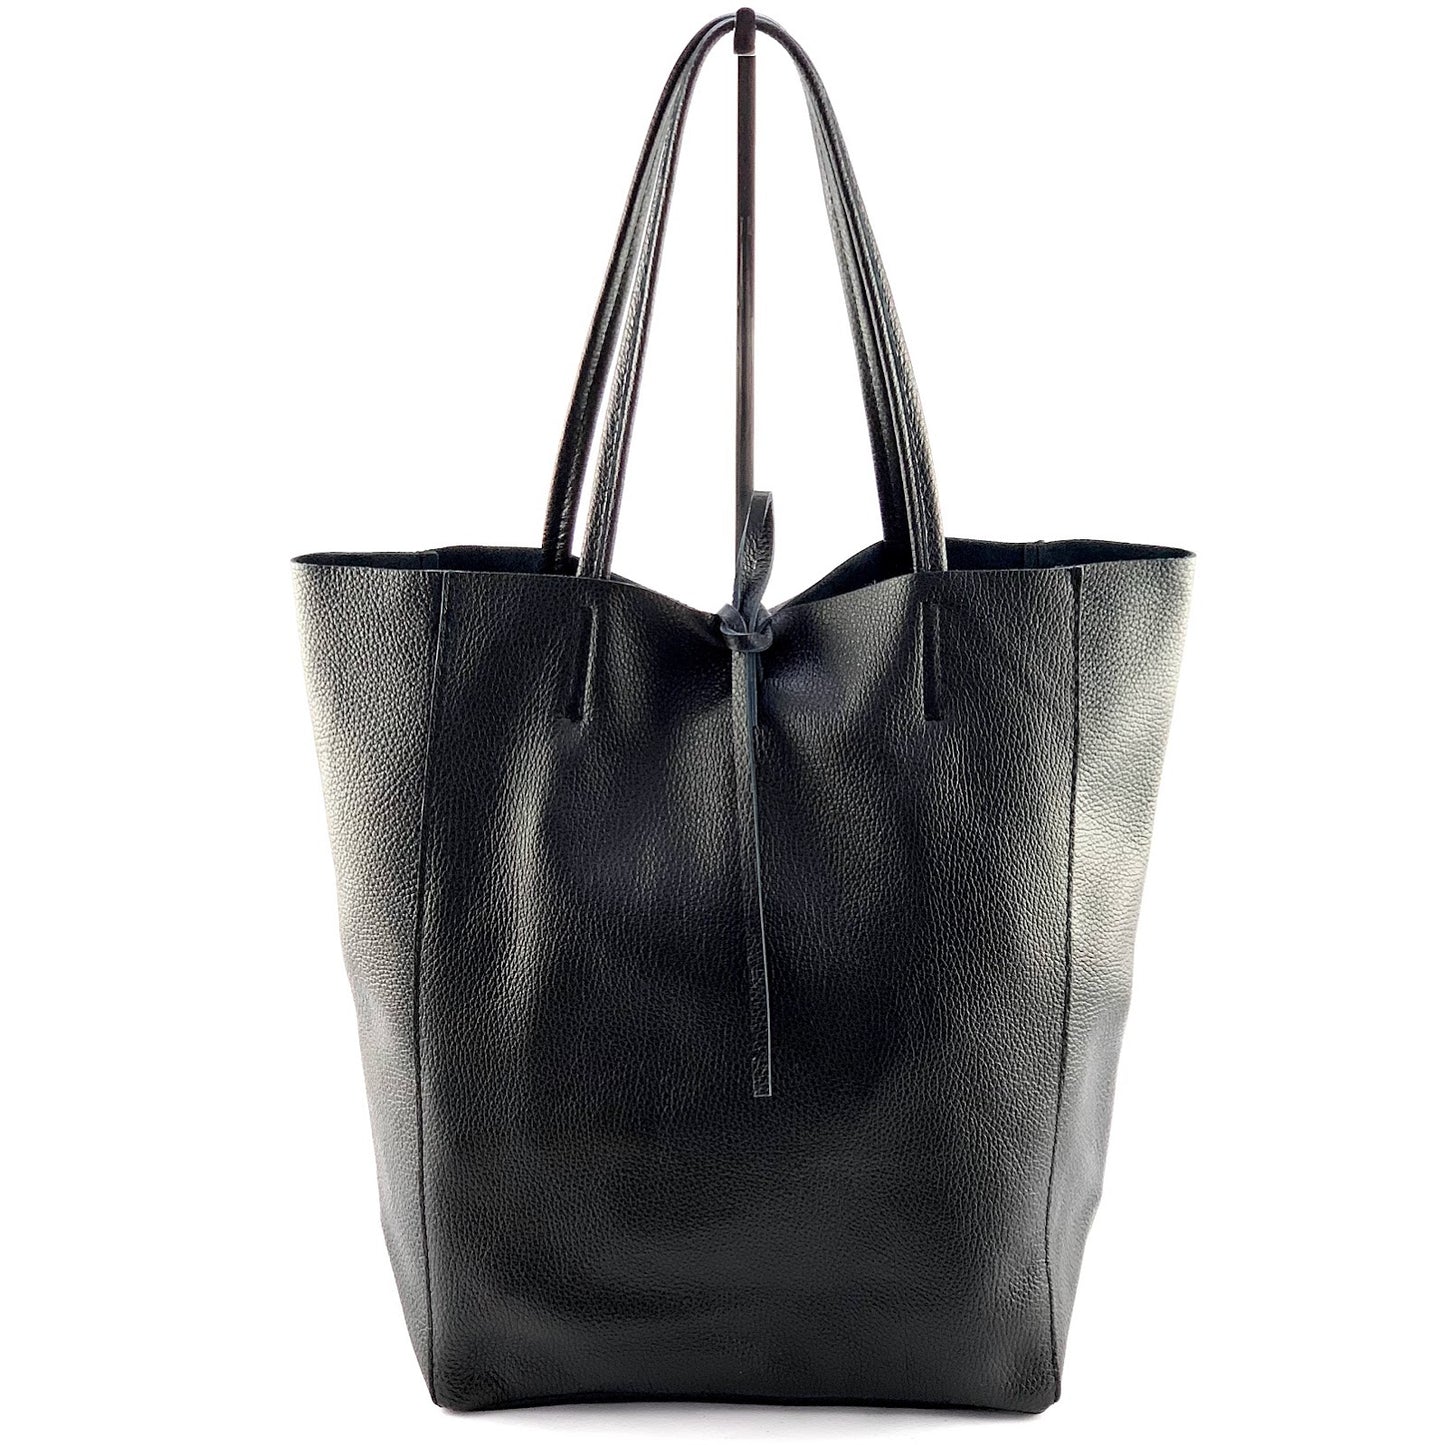 borsa a spalla - SHOPPER BIG - tote bag genuine leather - nero